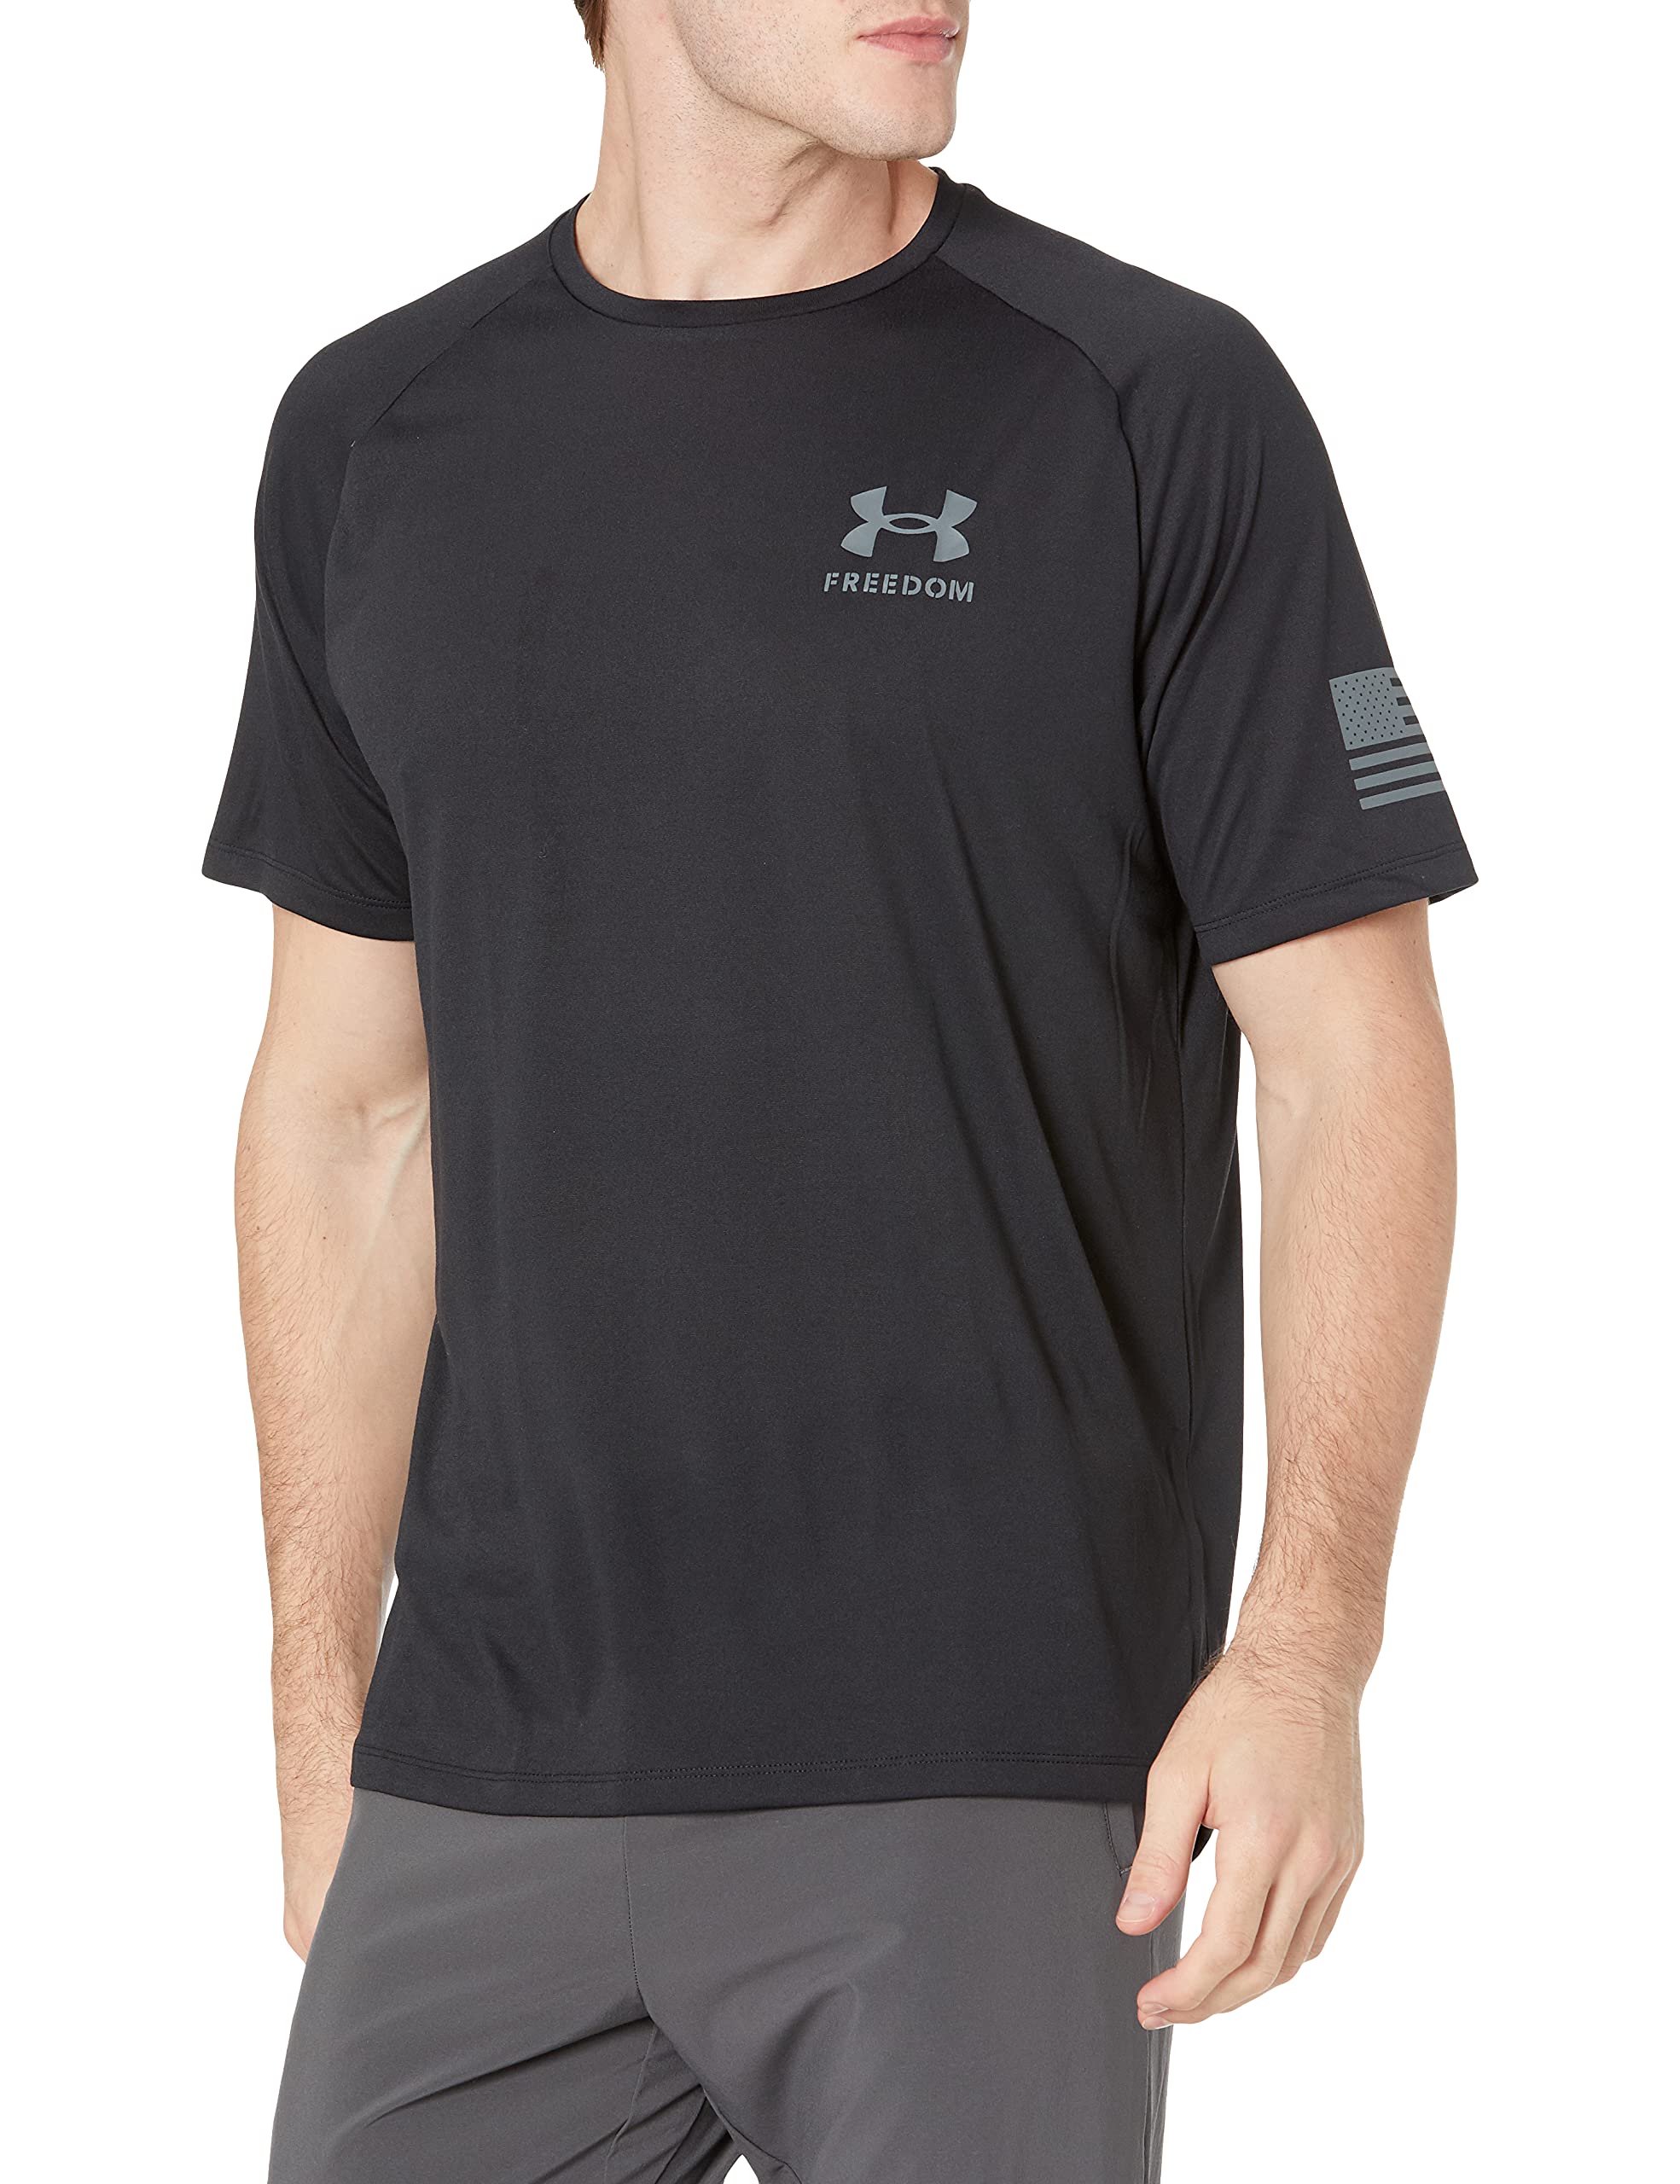 Under Armour Men's Freedom Tech Short Sleeve T-Shirt